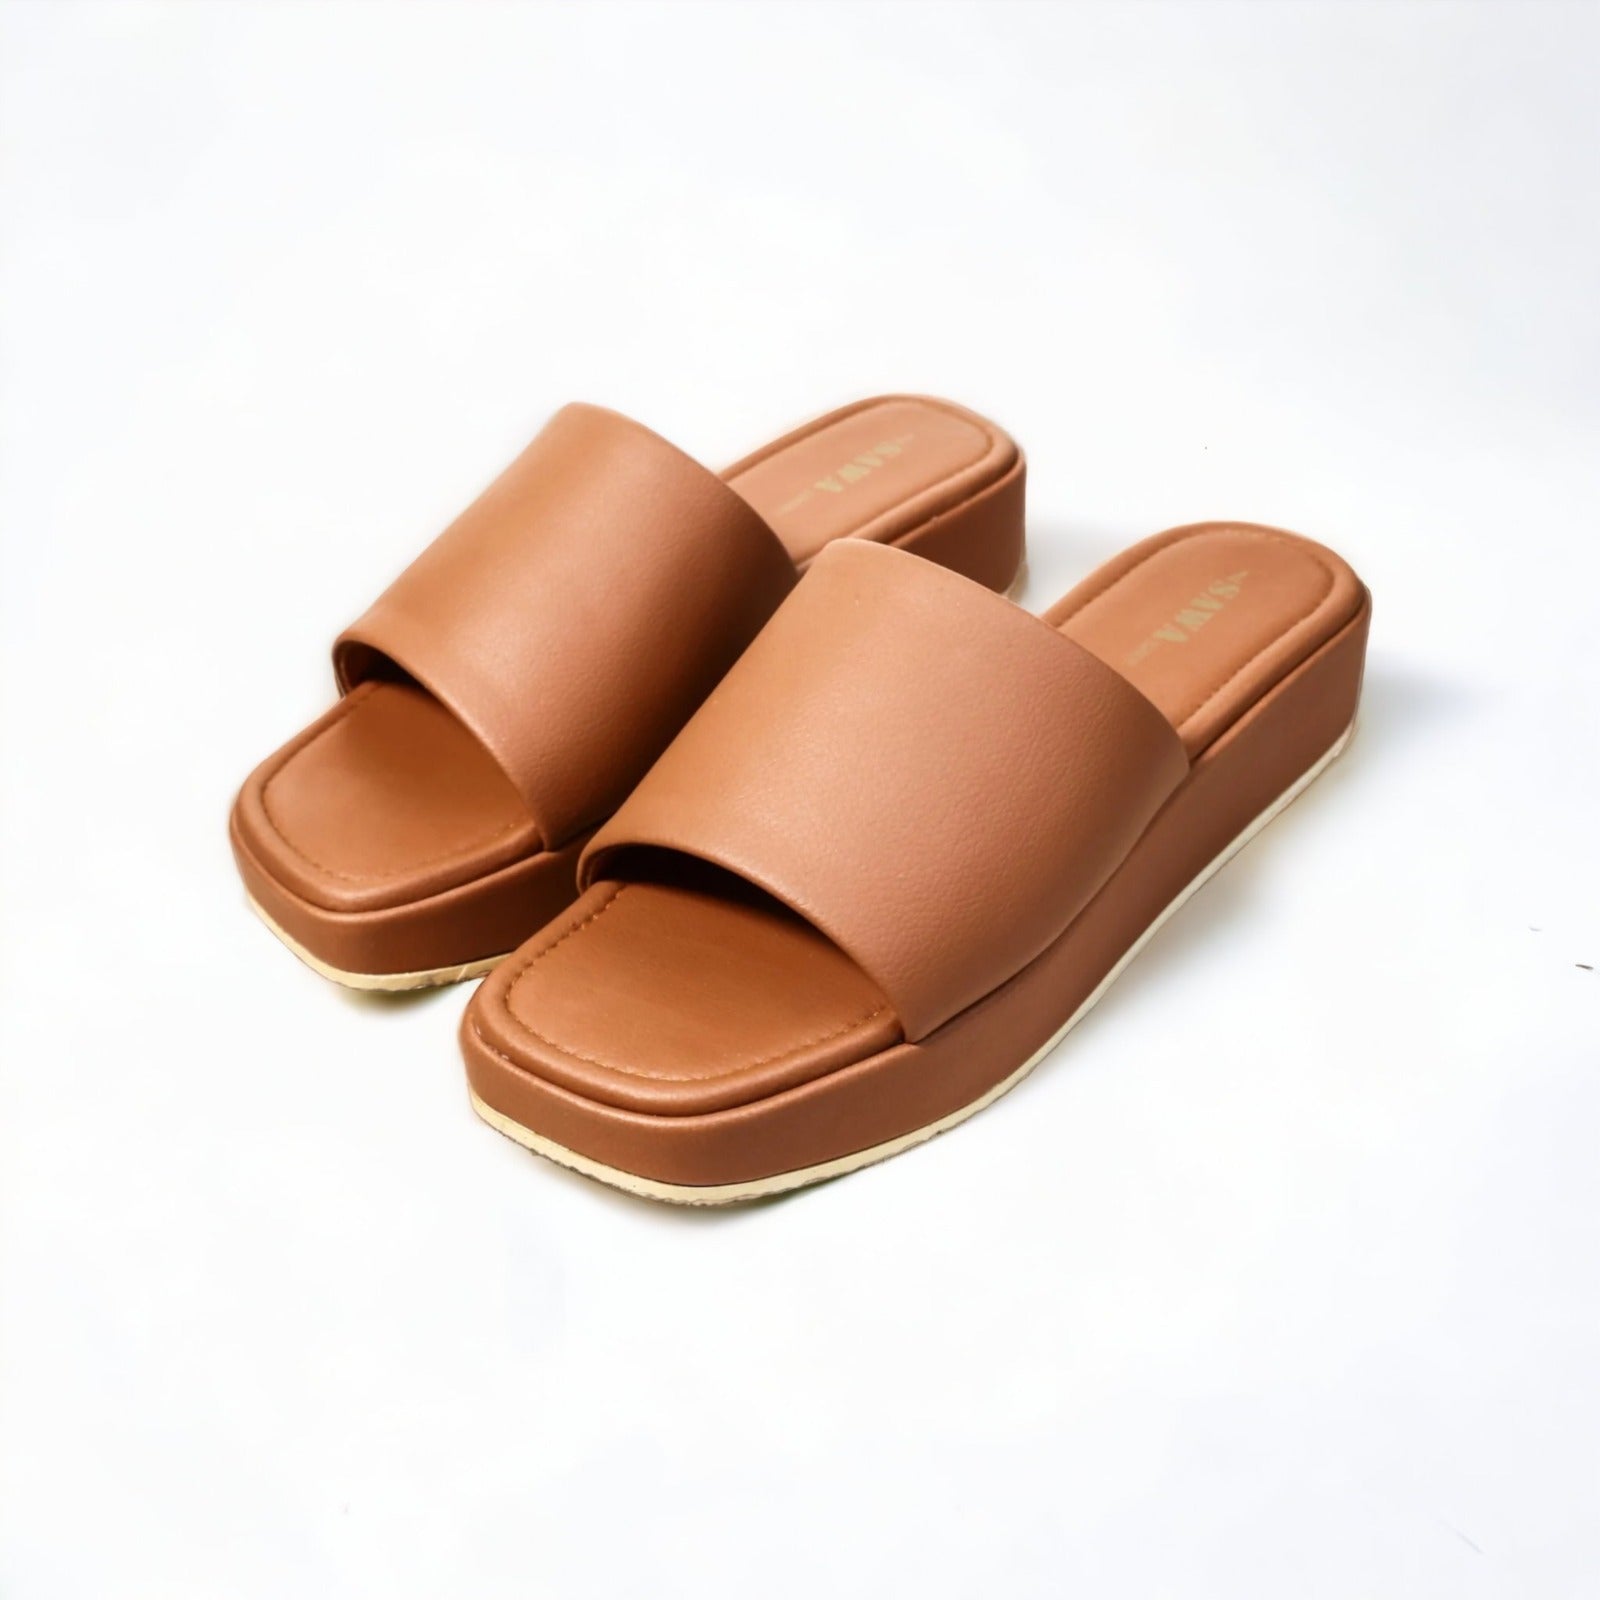 428 MS - Sawa.pkWomen #footwear #shoes #affordable